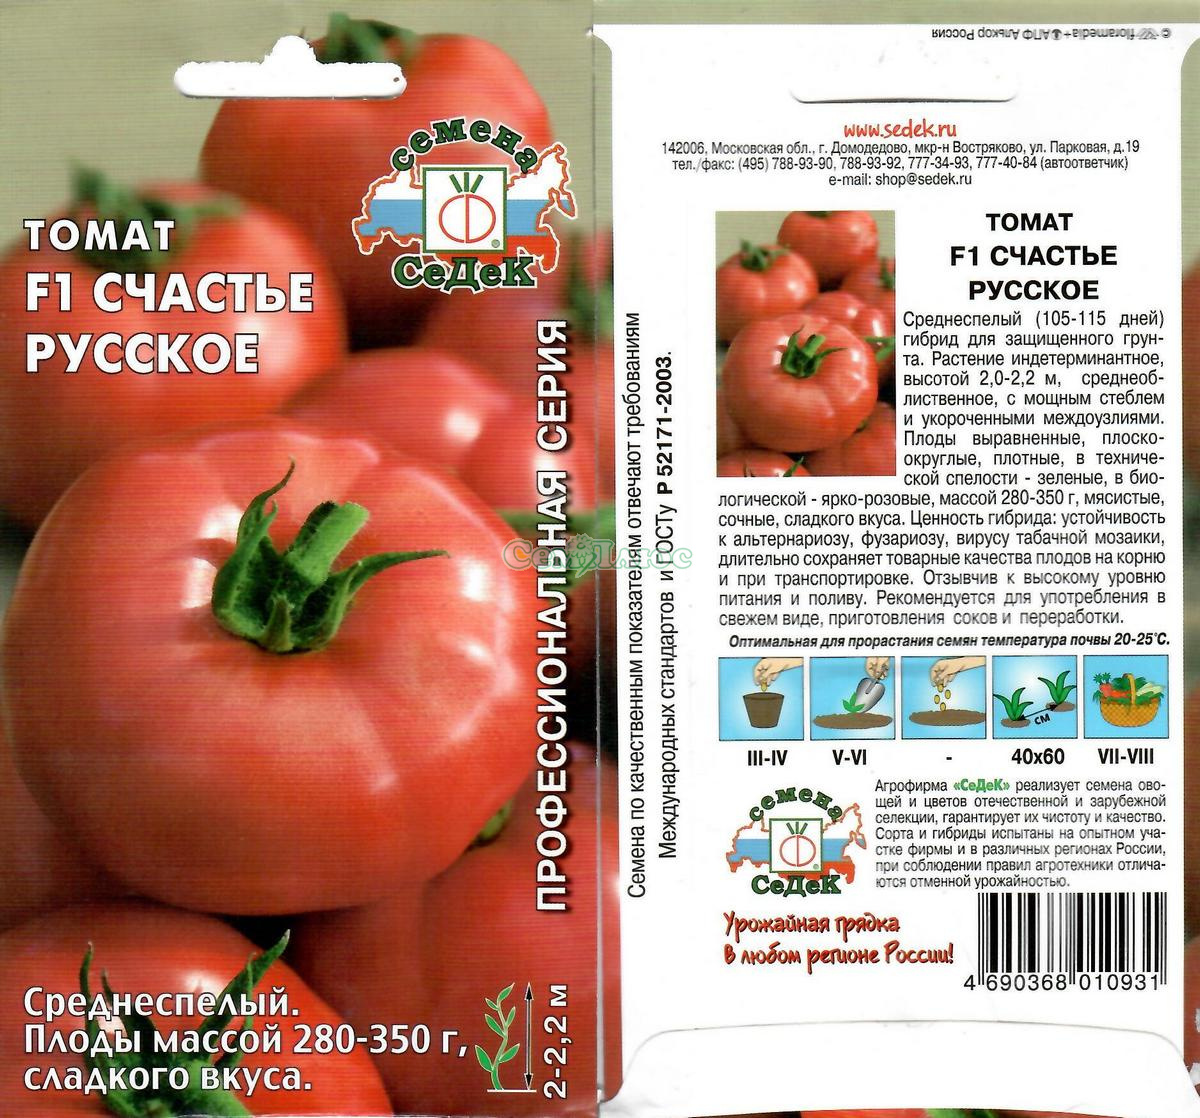 Томат "торнадо f1": описание и характеристики гибридного сорта, фотографии плодов-помидоров русский фермер